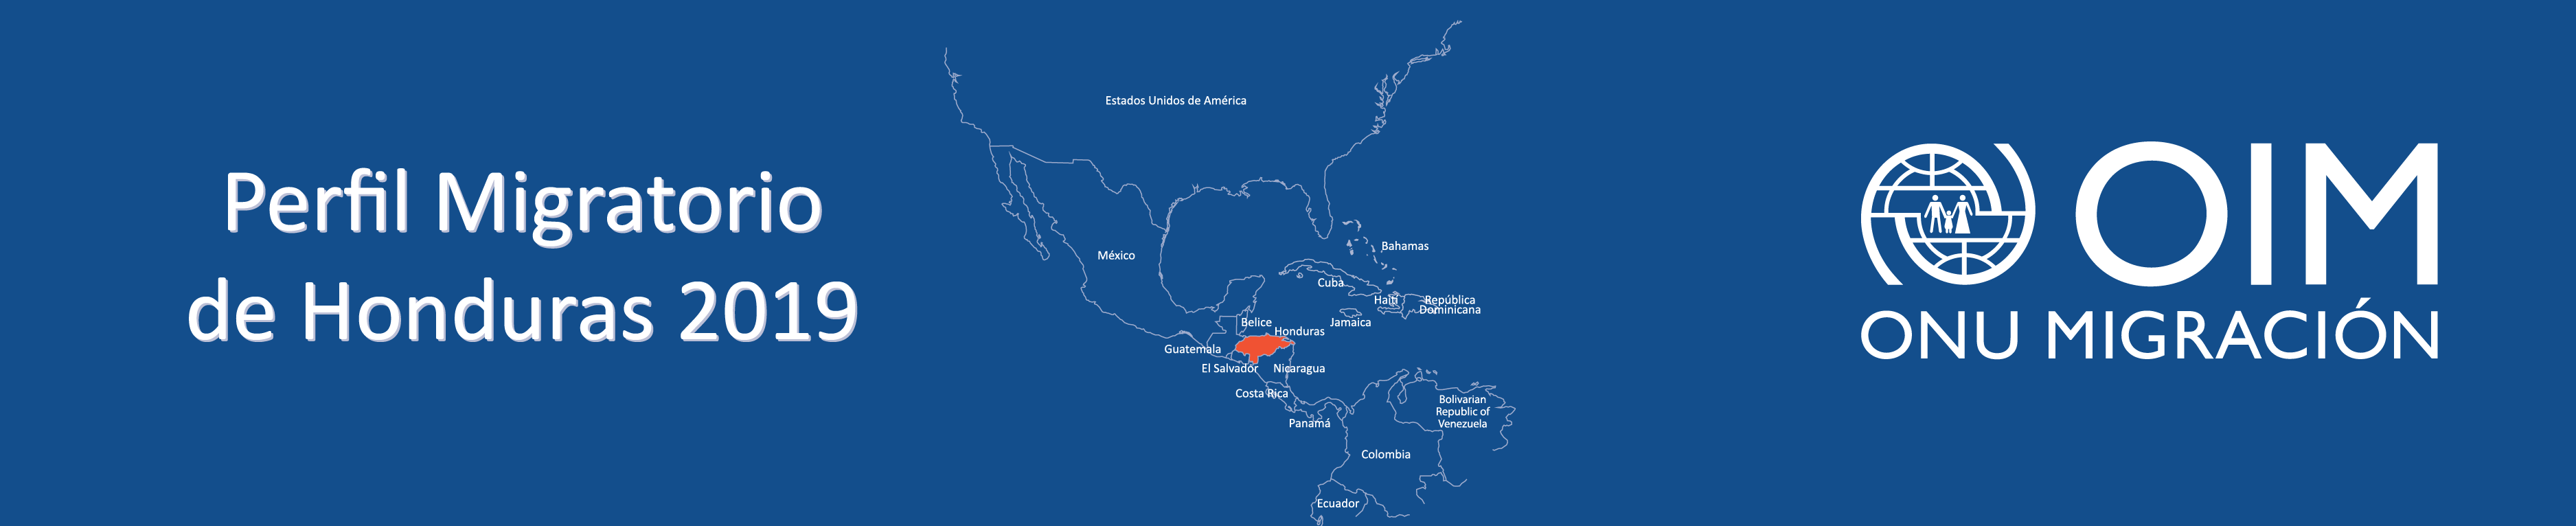 Perfil Migratorio de Honduras 2019